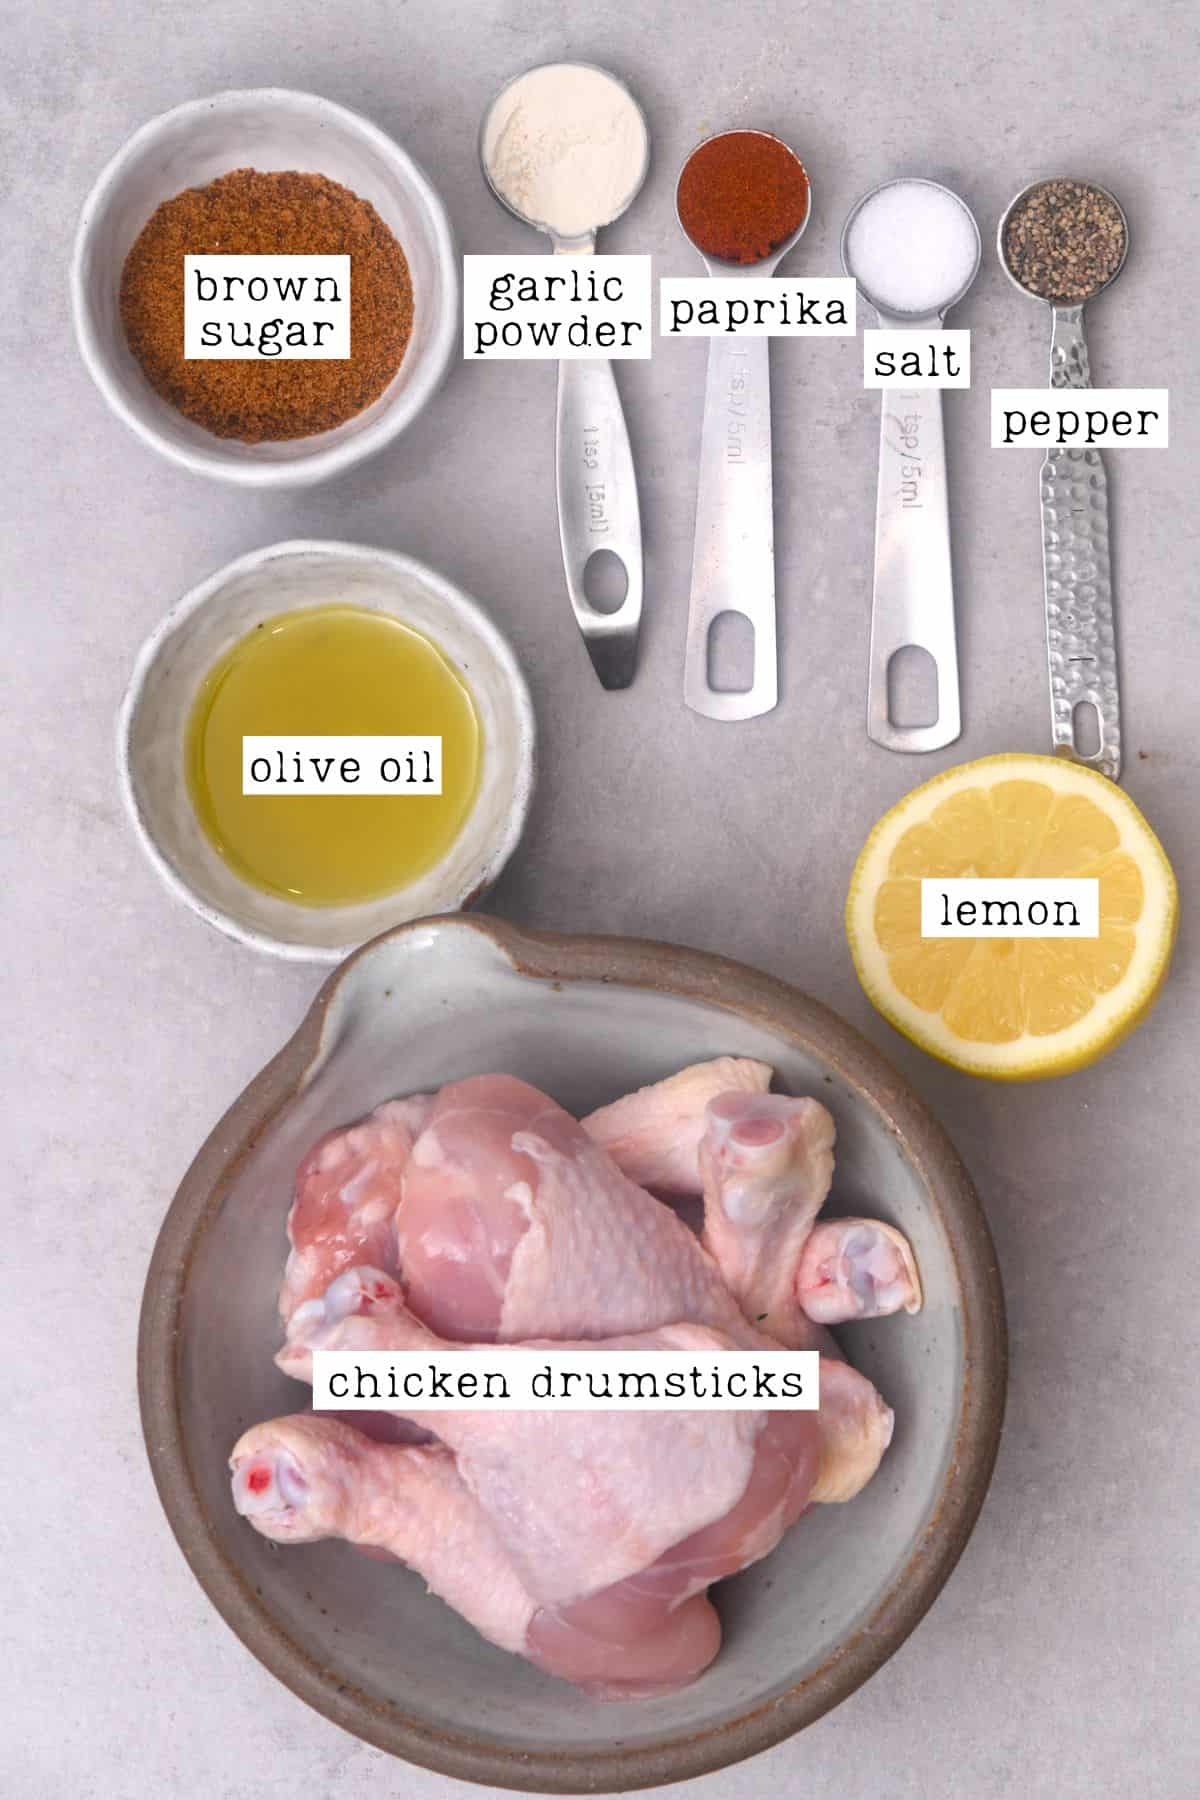 Ingredients for air dryer chicken drumsticks